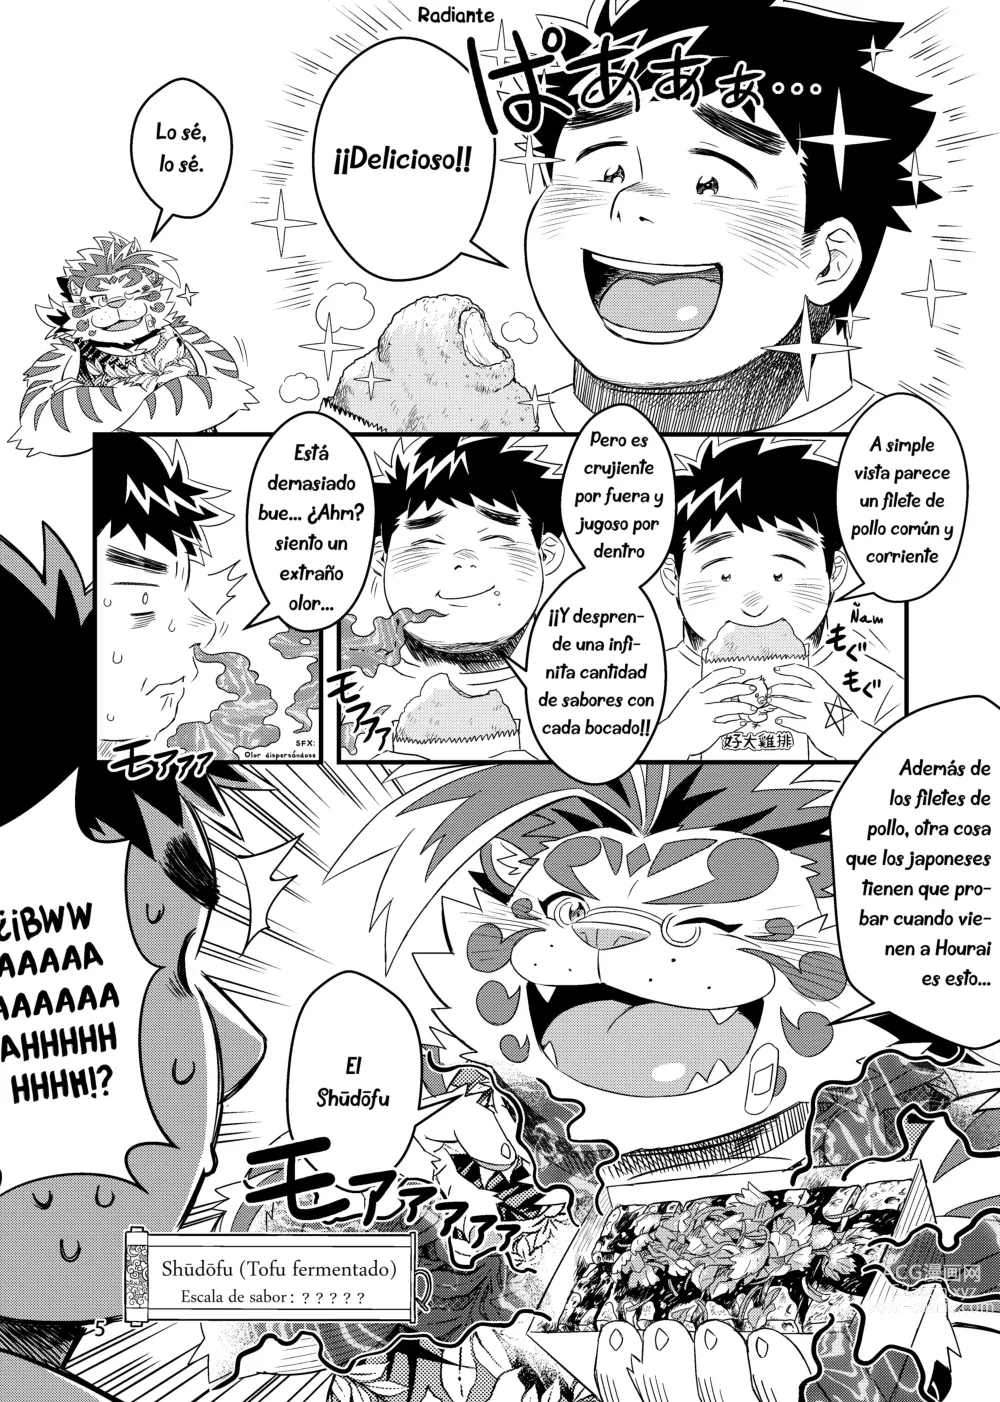 Page 8 of doujinshi ¿No es ese mi amigo Licho?